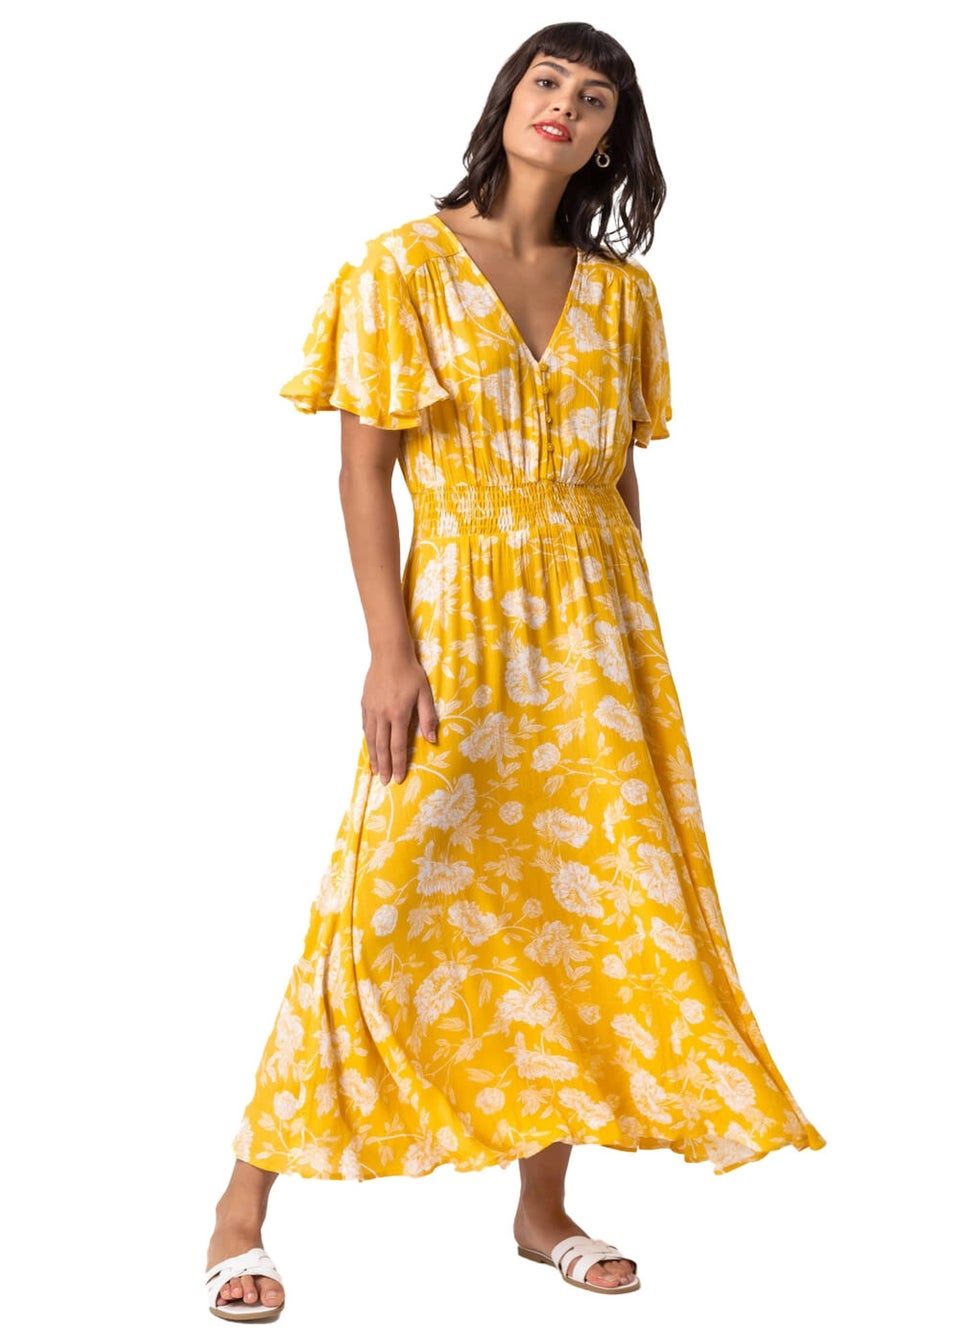 Roman Bright Yellow Floral Print Tiered Midi Dress